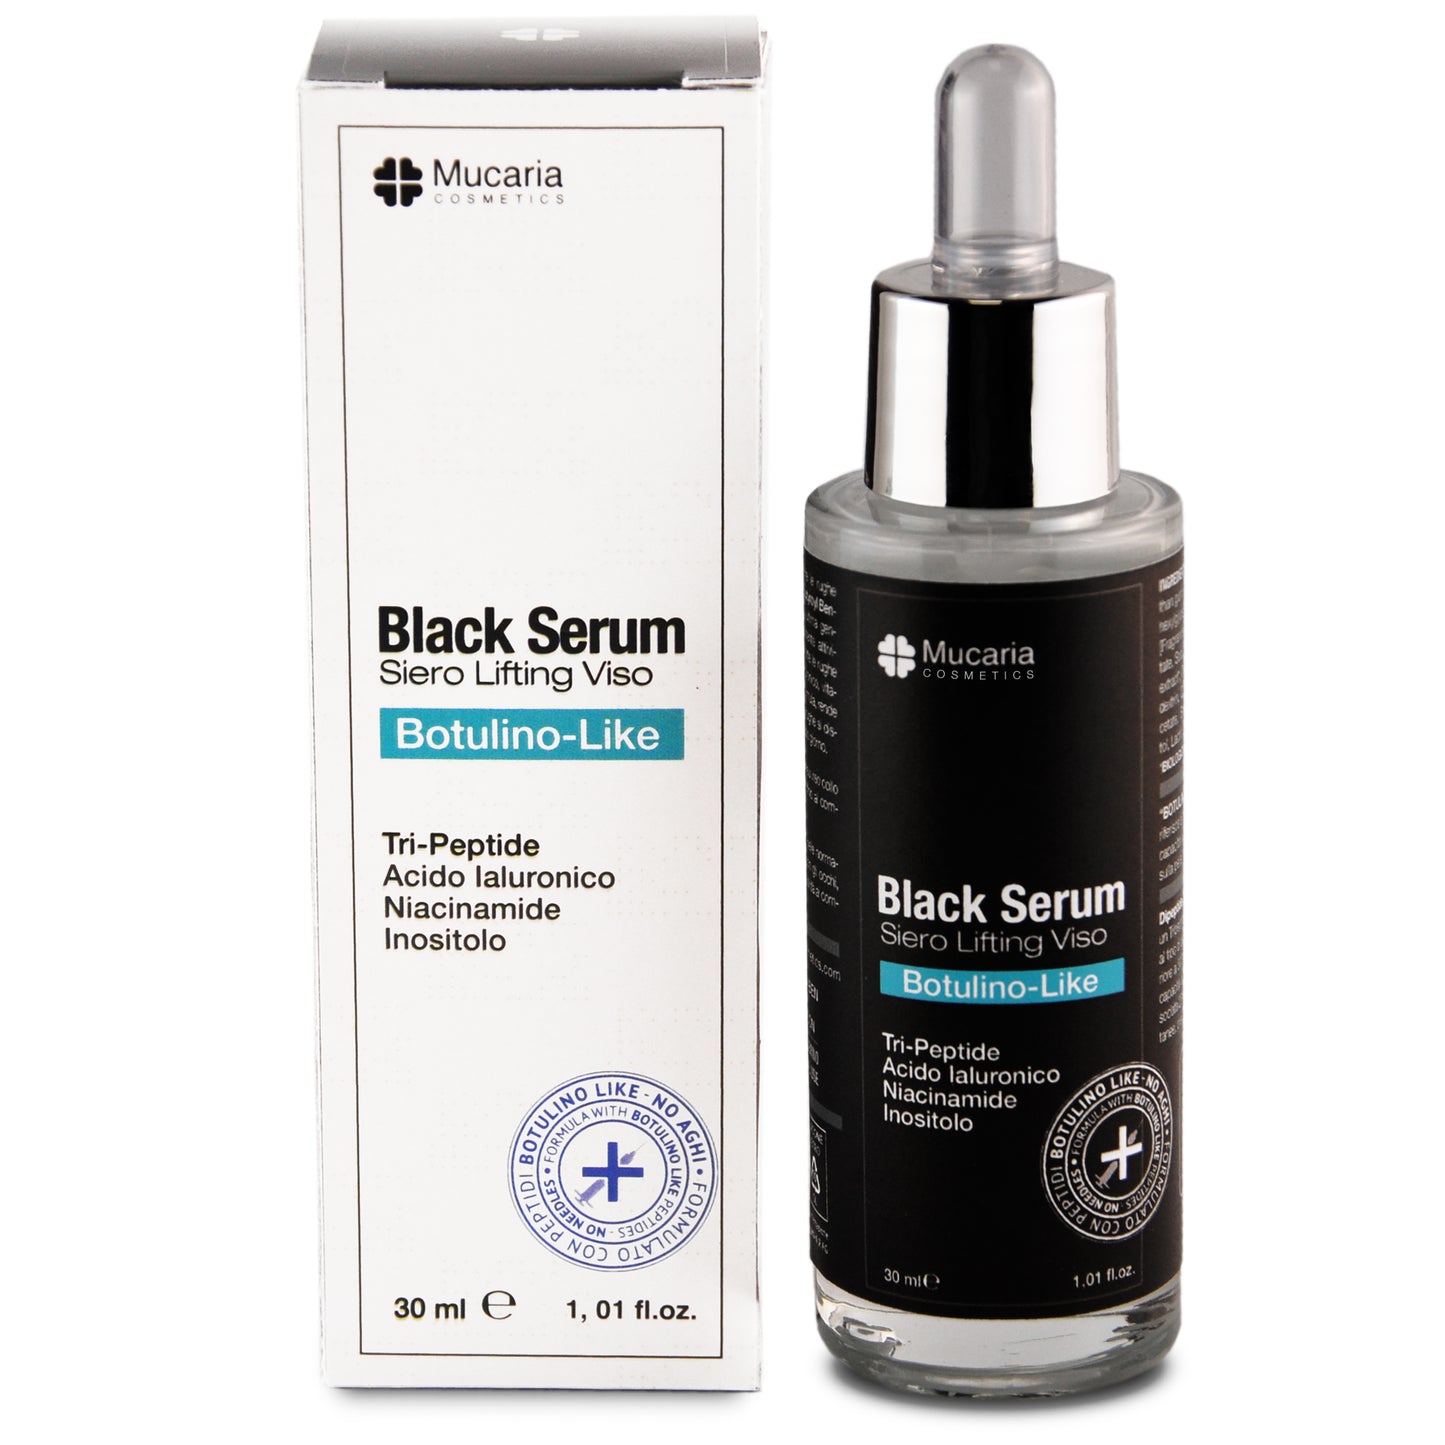 Black Serum - Siero Lifting Viso "BotulinoLike"